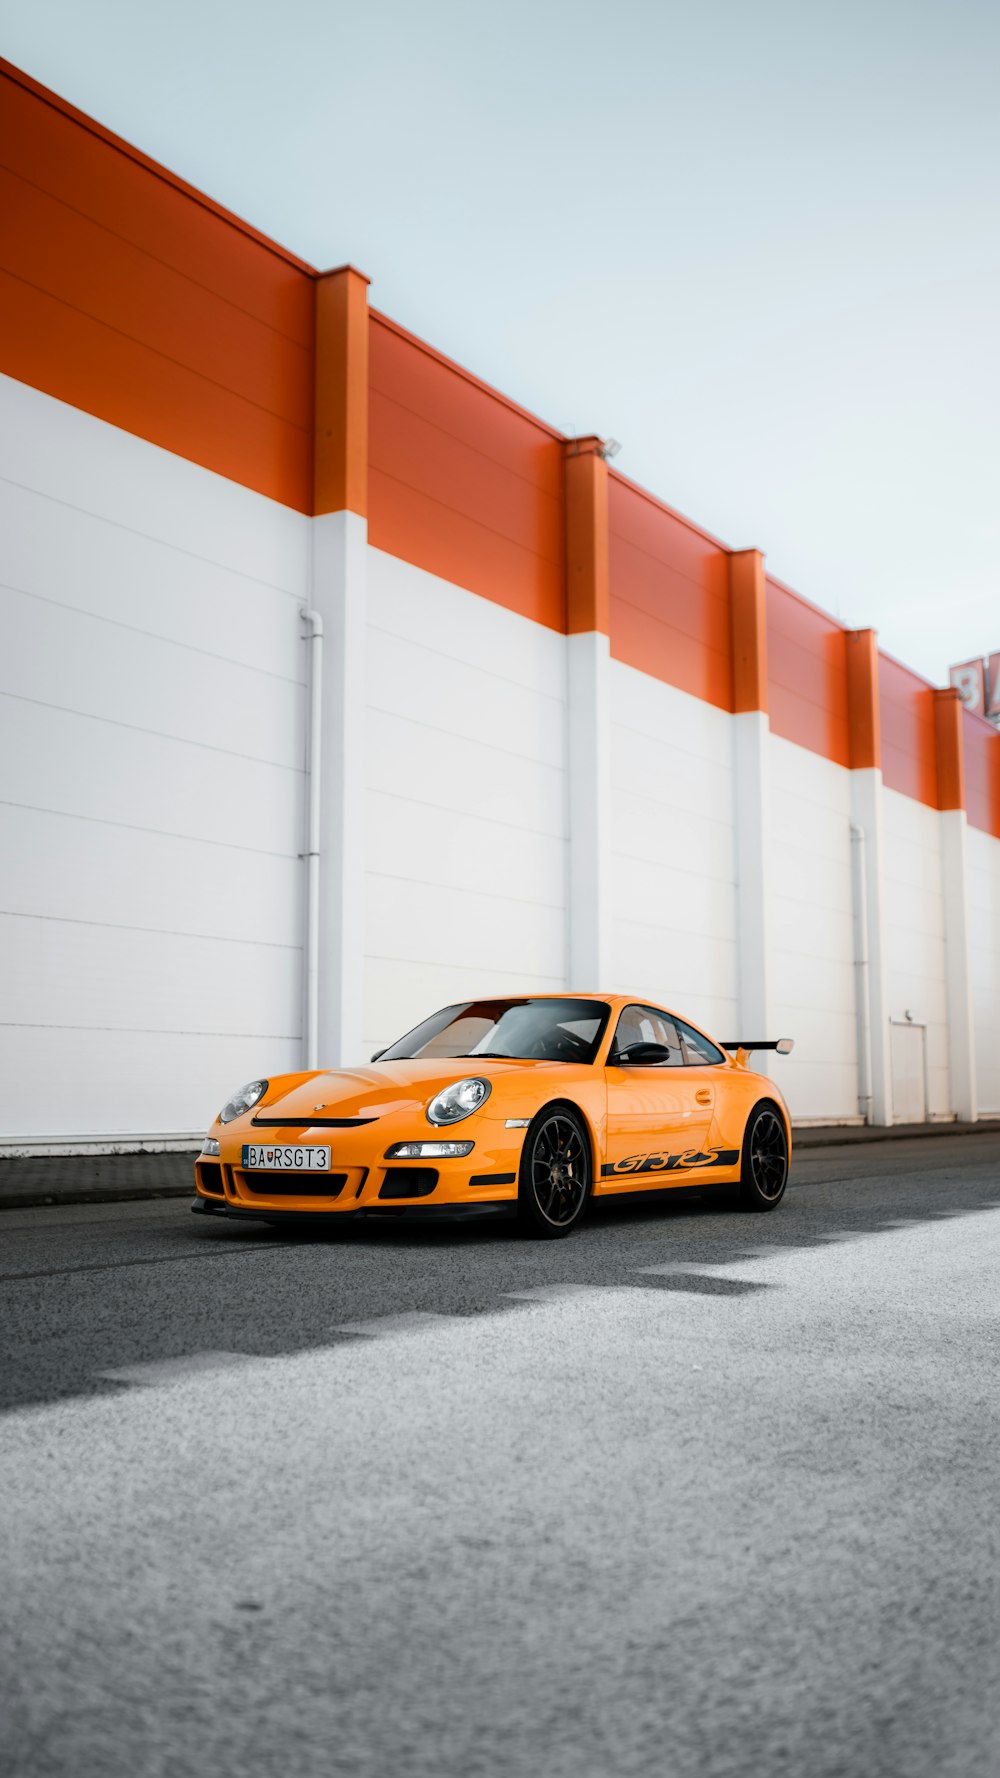 Porsche 911 naranja y negro aparcado junto a la pared blanca y roja